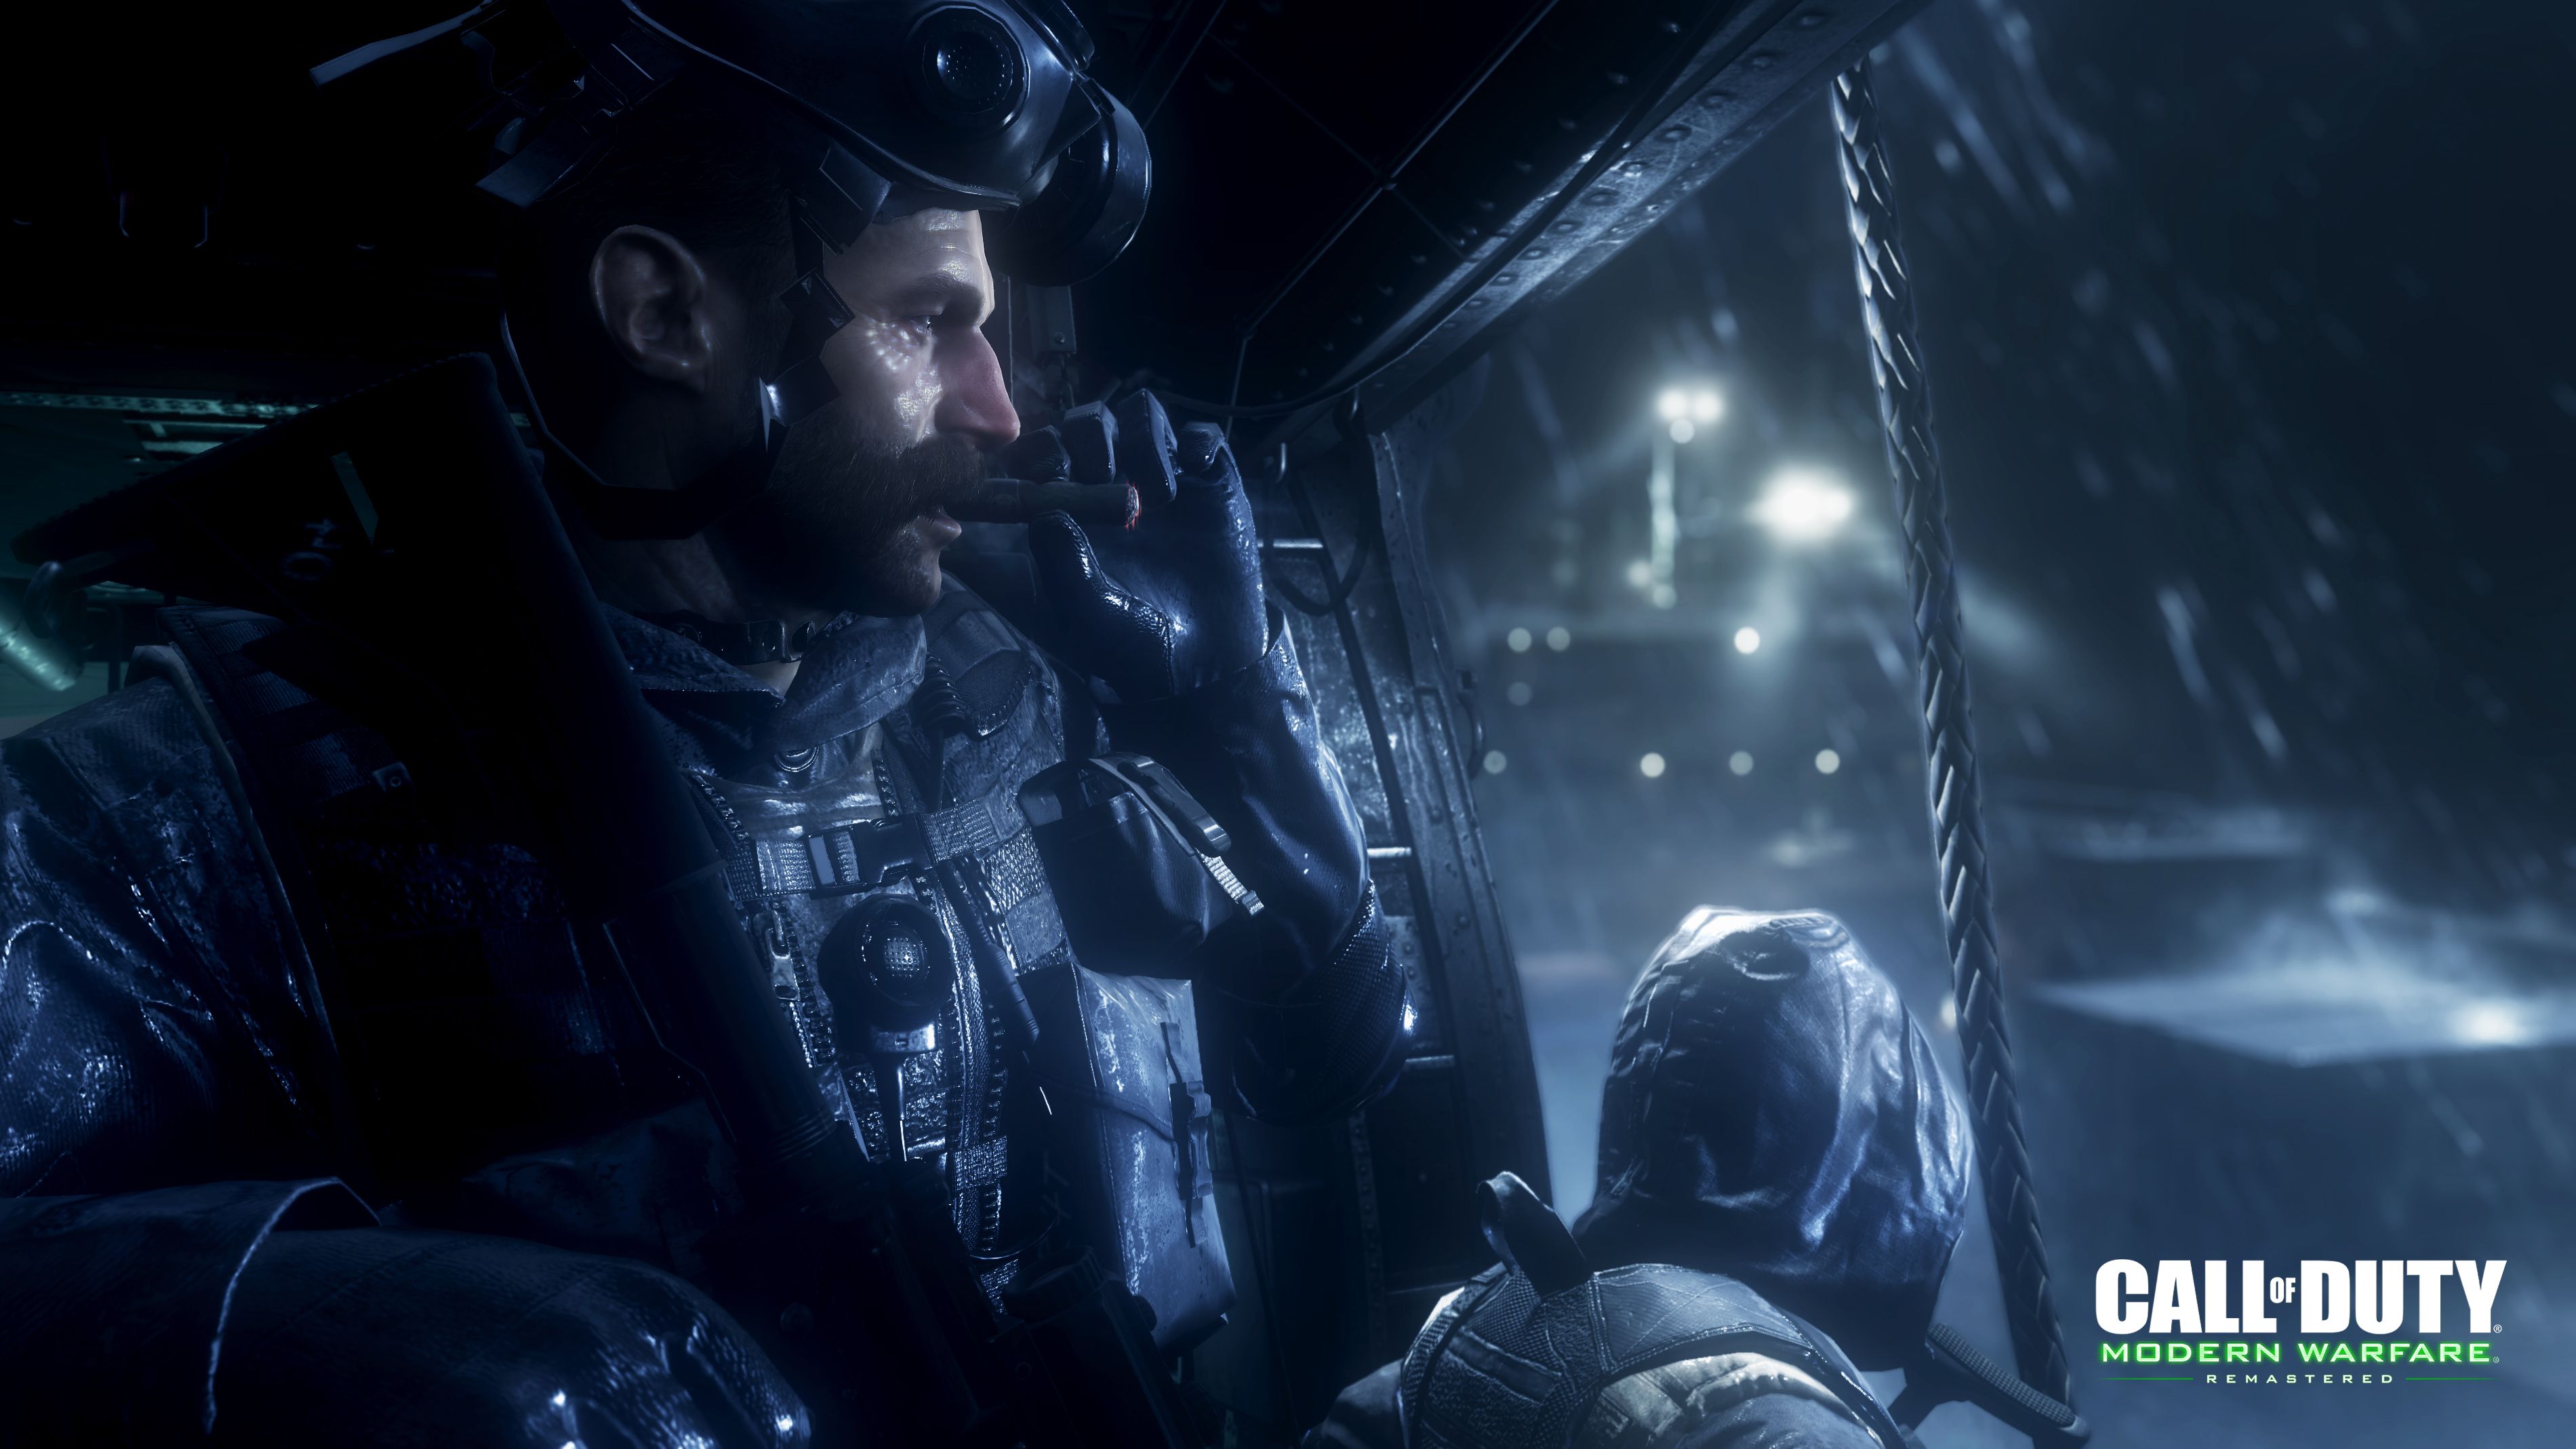 Với độ phân giải cao, Call of Duty: Modern Warfare Remastered đã khiến cho cảm nhận trò chơi trở nên chân thực hơn bao giờ hết. Đồ họa cực kỳ sắc nét và chi tiết, bạn sẽ có cảm giác như mình đang tham gia vào một cuộc chiến thật sự. Hãy xem các bức ảnh HD liên quan để cảm nhận được tối đa sử thi Call of Duty này.